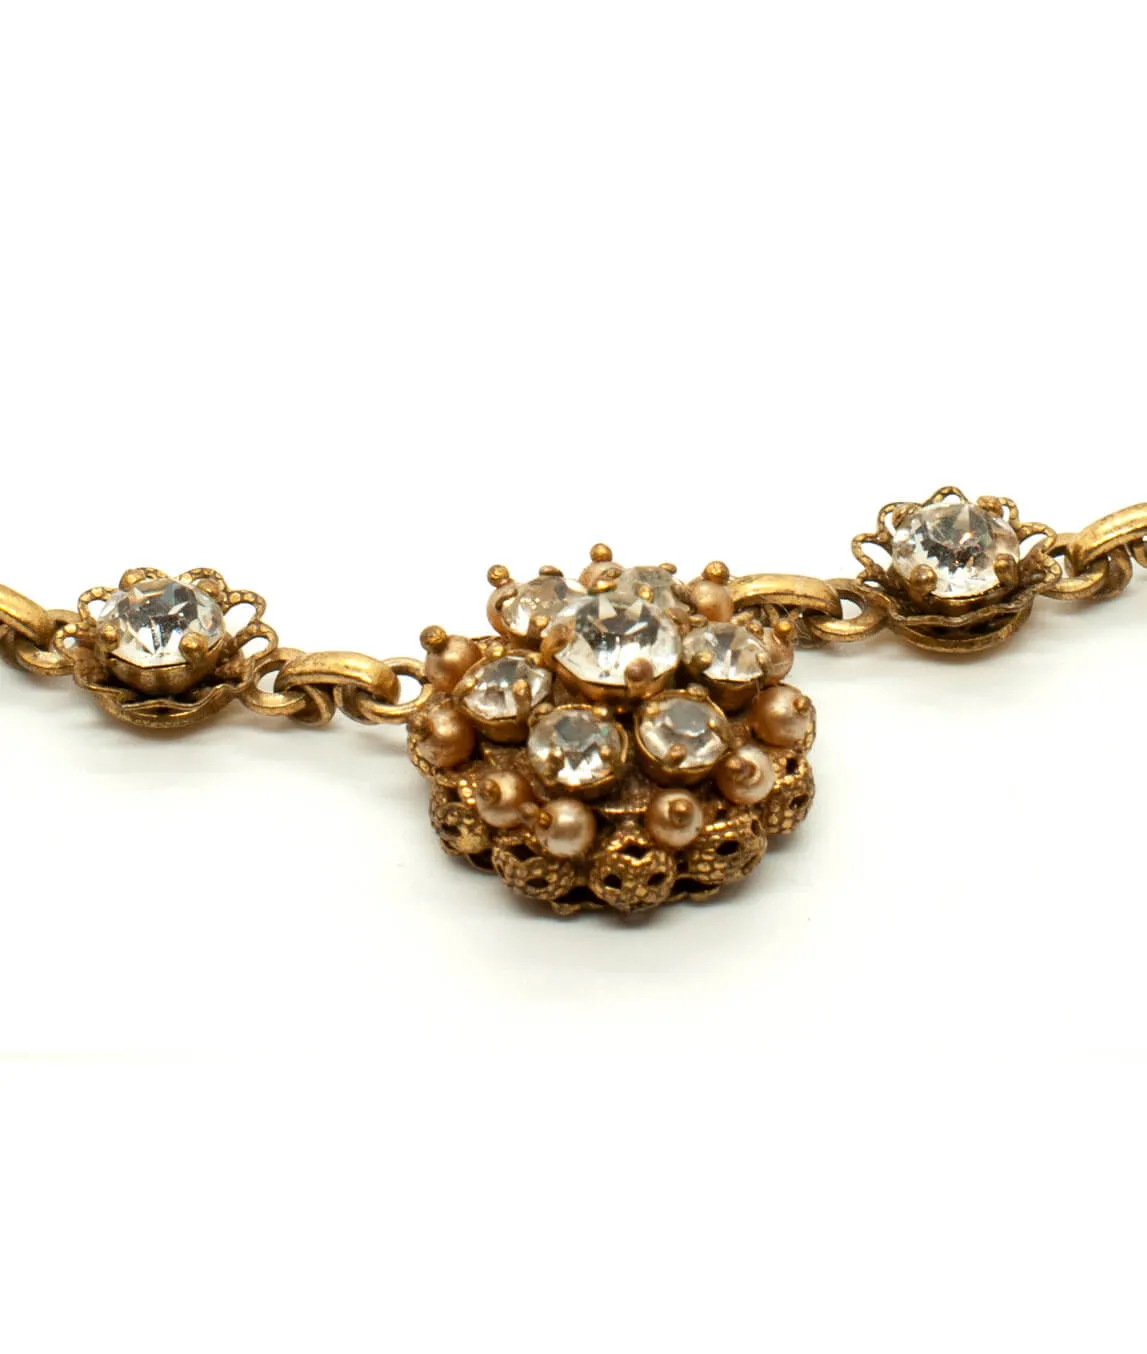 Kramer for Dior necklace cluster